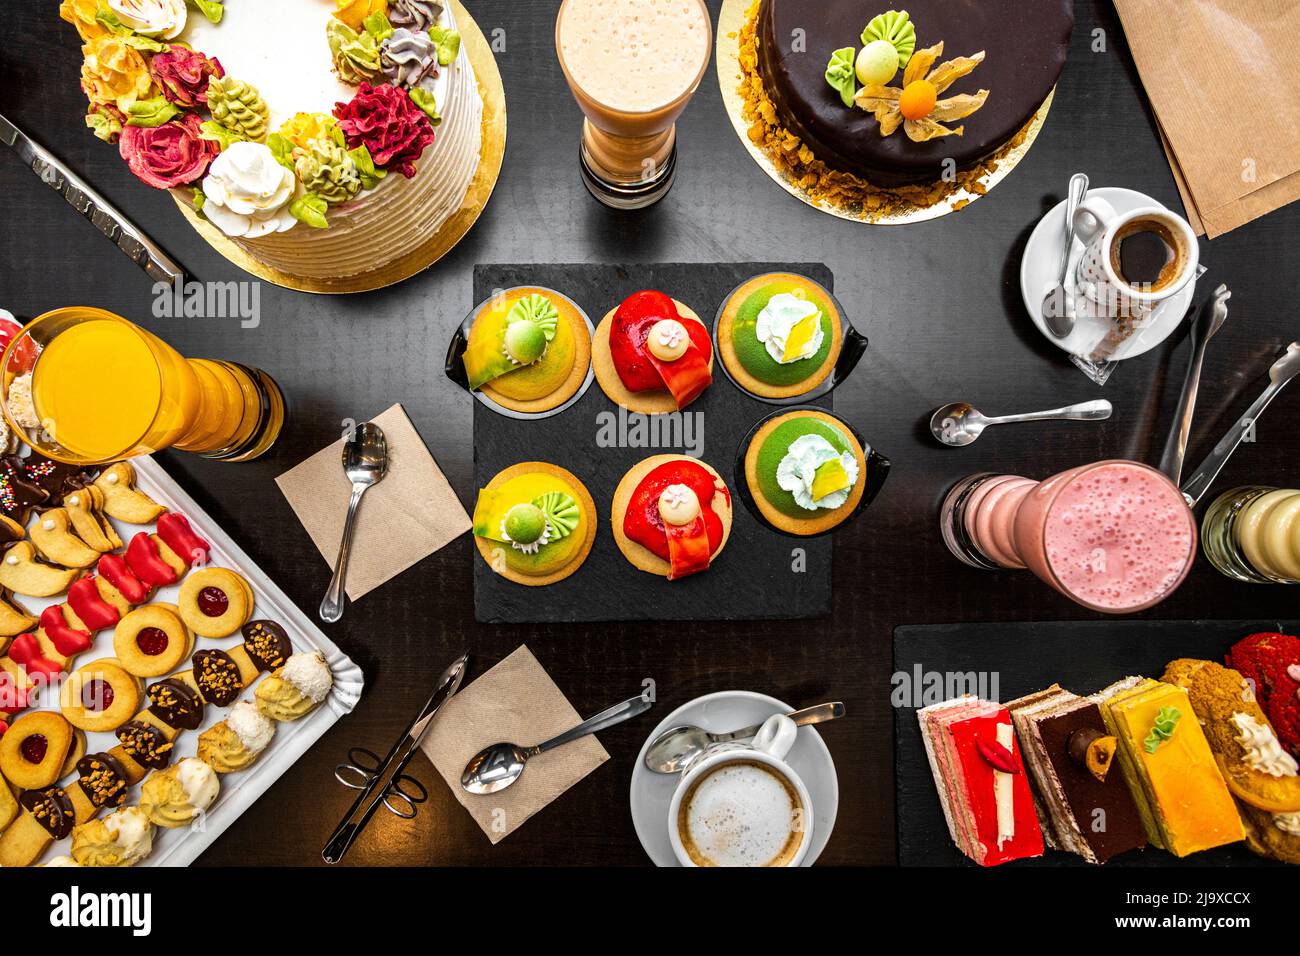 Dessert und Kuchen auf einem schwarzen Tisch, Cremeschokolade, Puderzucker, Buttercroissants, Orangensaft, Teekuchen, süße Schnecken. Stockfoto